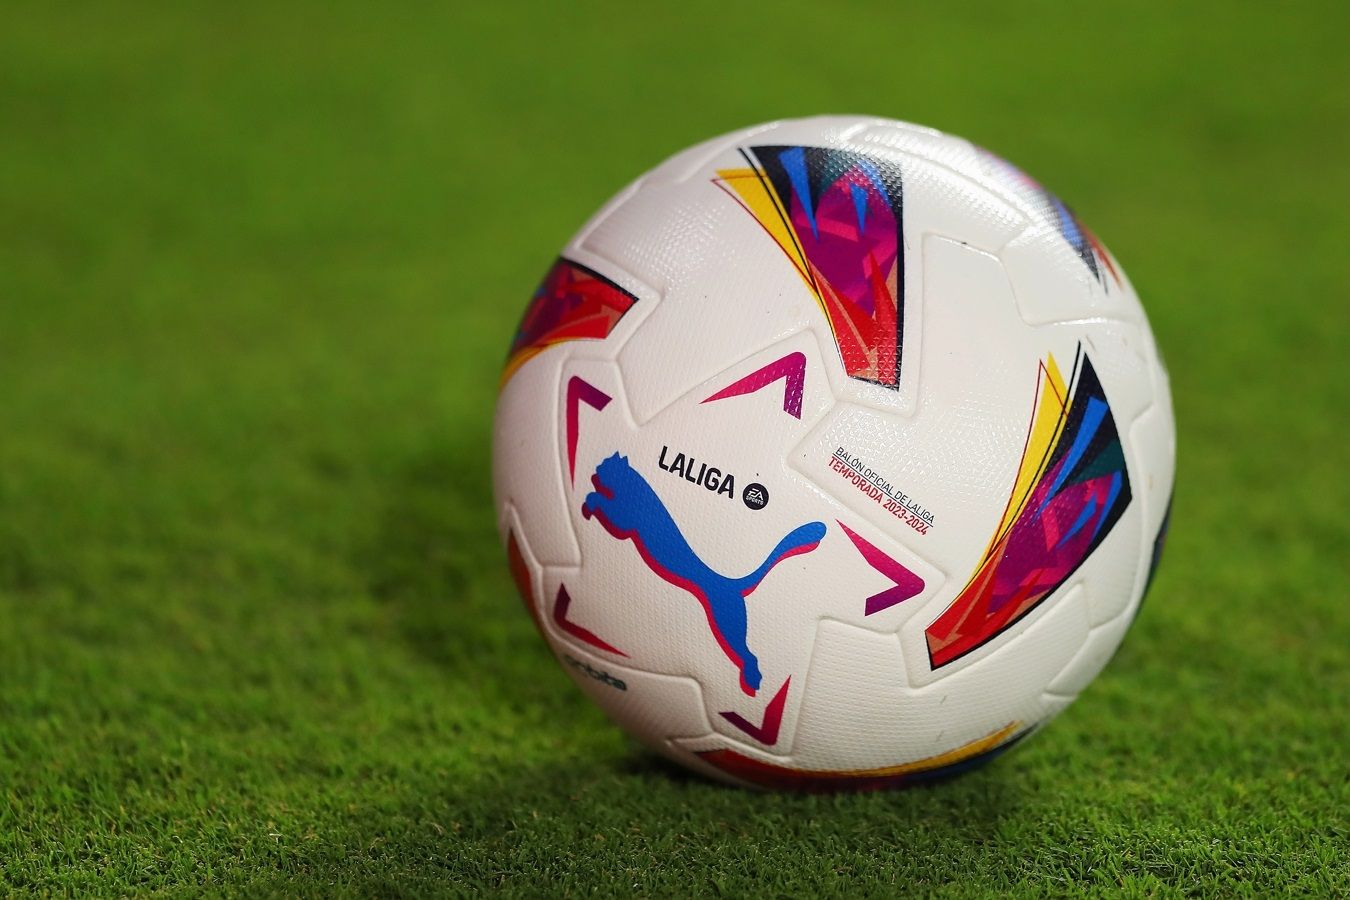 Ла Лига, RFEF и полиция Испании обсудили меры против инцидентов на футбольных матчах